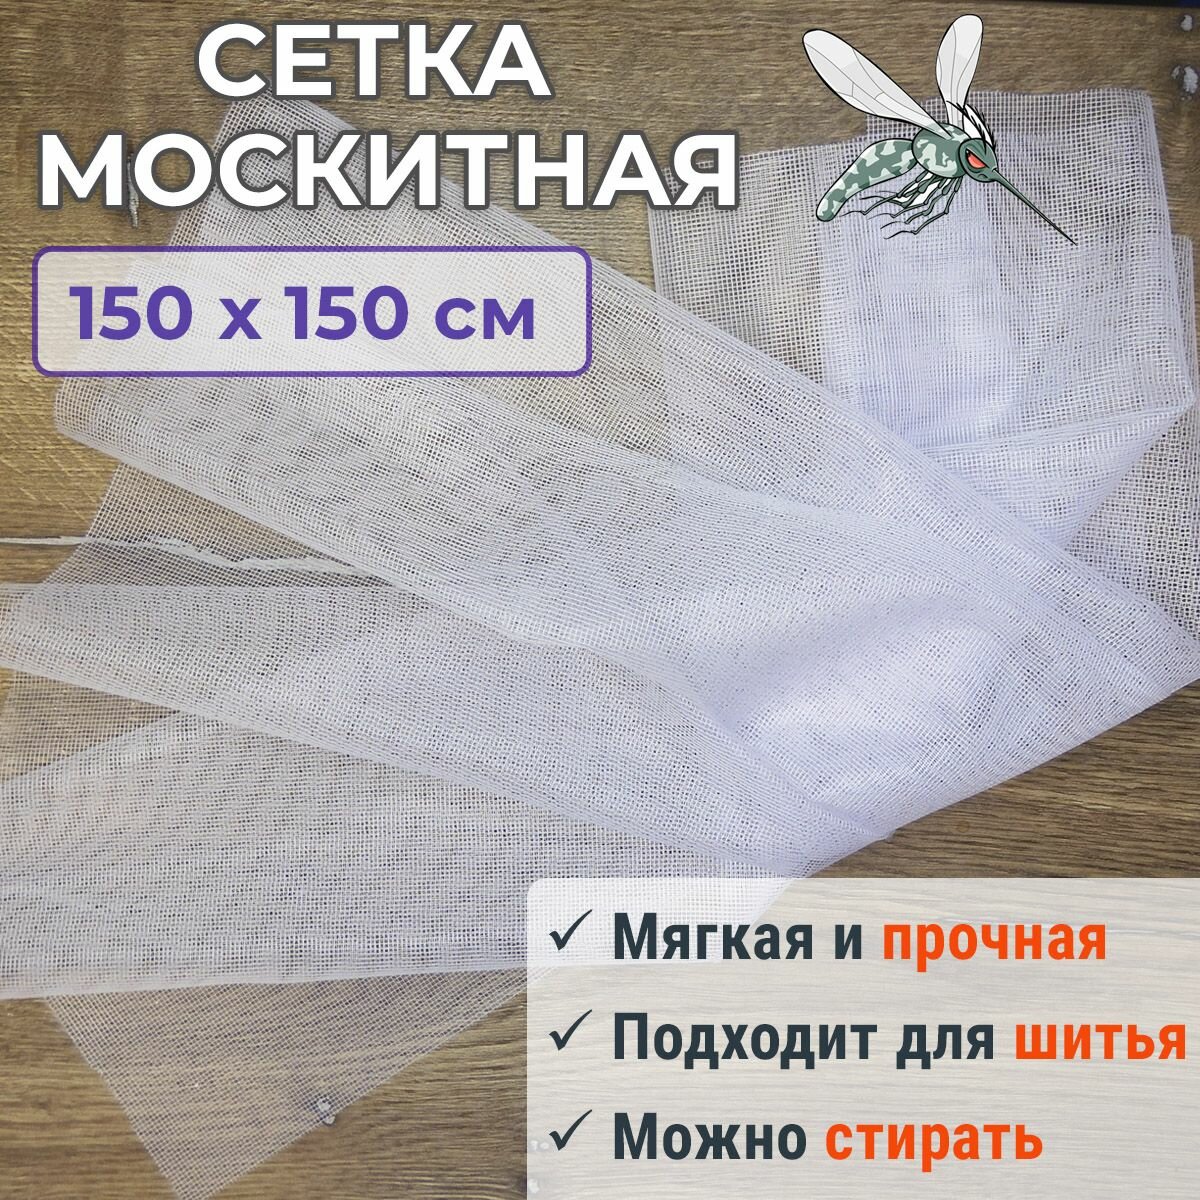 Москитная сетка полиэфирная 150 х 150 см белая